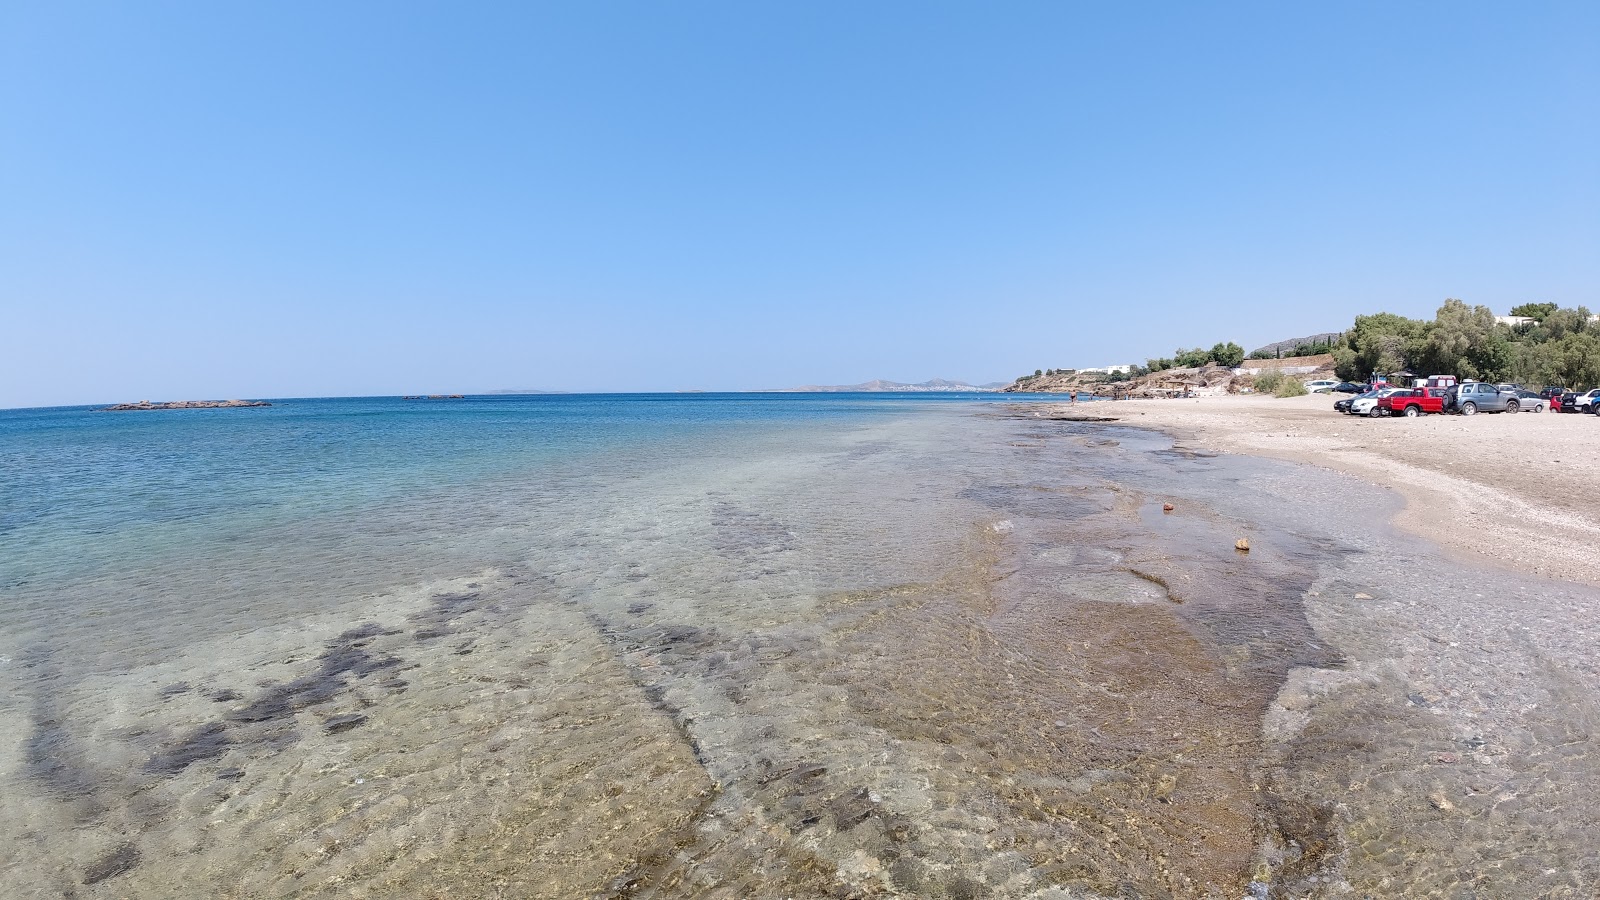 Fotografie cu Paralia Agios Nikolaos cu o suprafață de nisip strălucitor și pietre